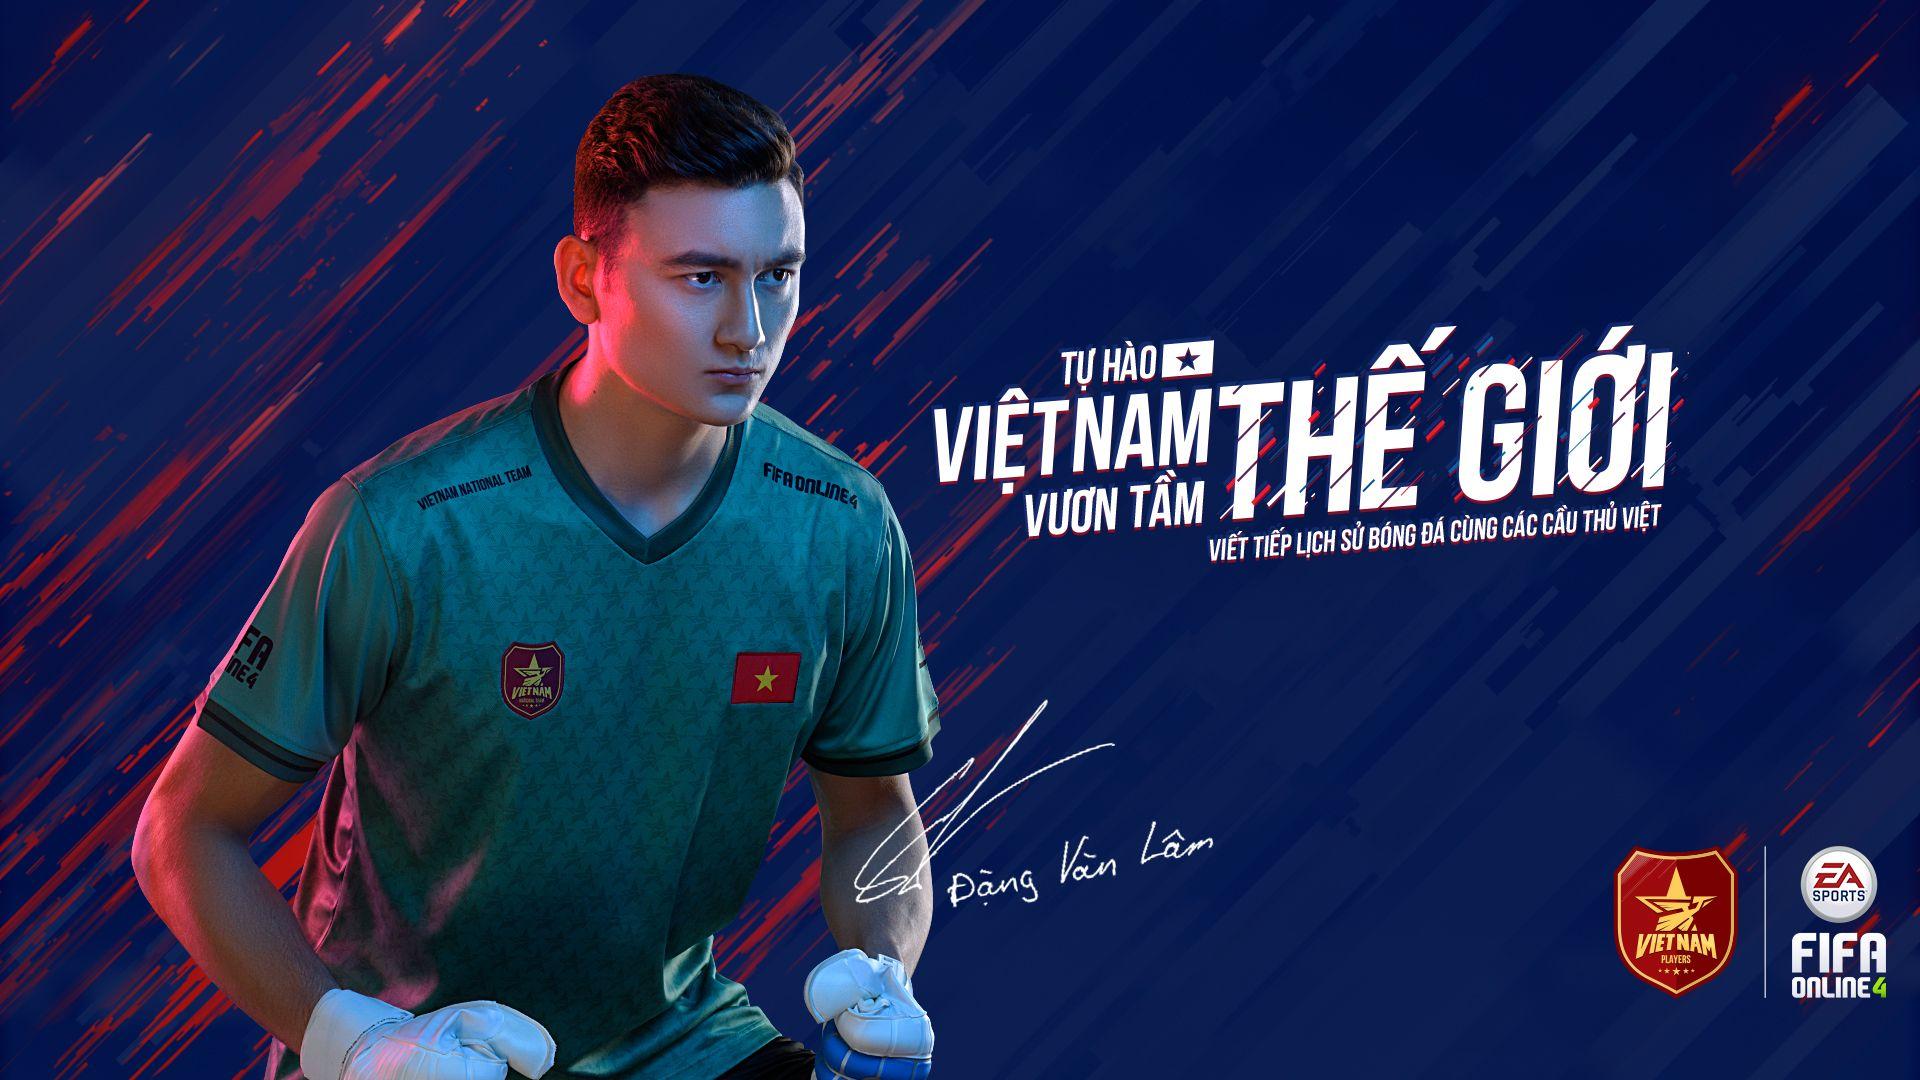 FIFA Online 4 Việt Nam  CHÍNH THỨC DAVID BECKHAM ẤN ĐỊNH NGÀY XUẤT HIỆN  TRONG FIFA ONLINE 4